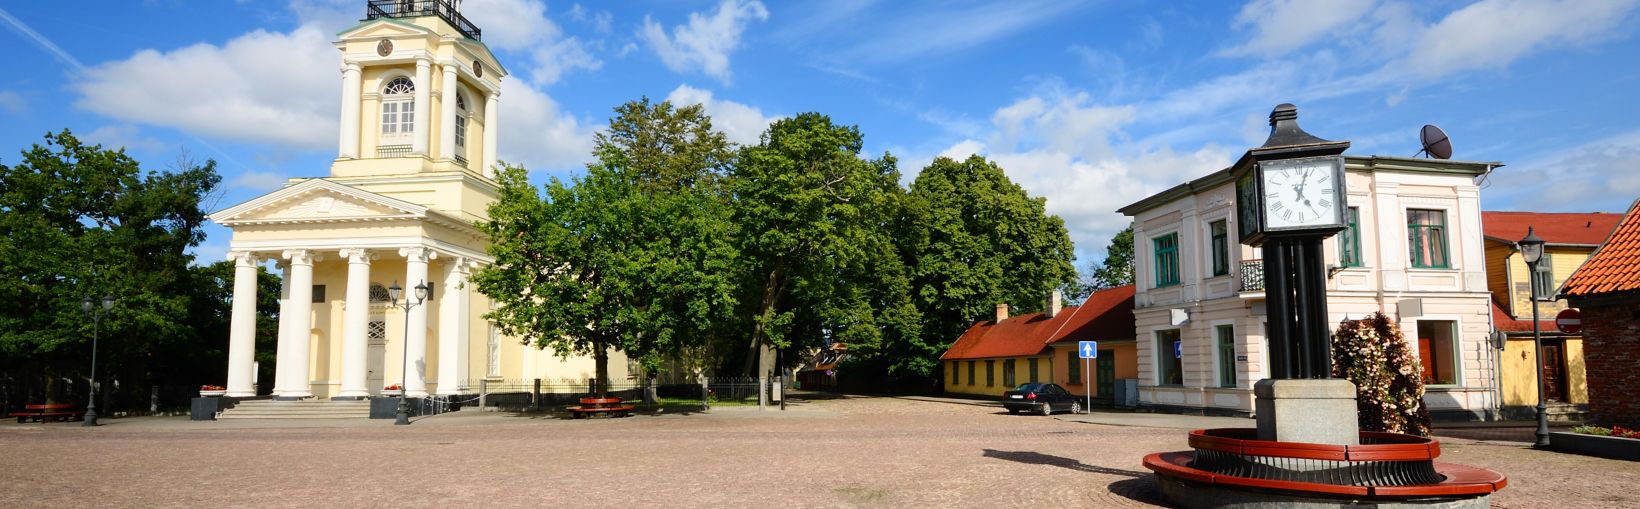 Katolsk kirke i den gamle del af Ventspils.